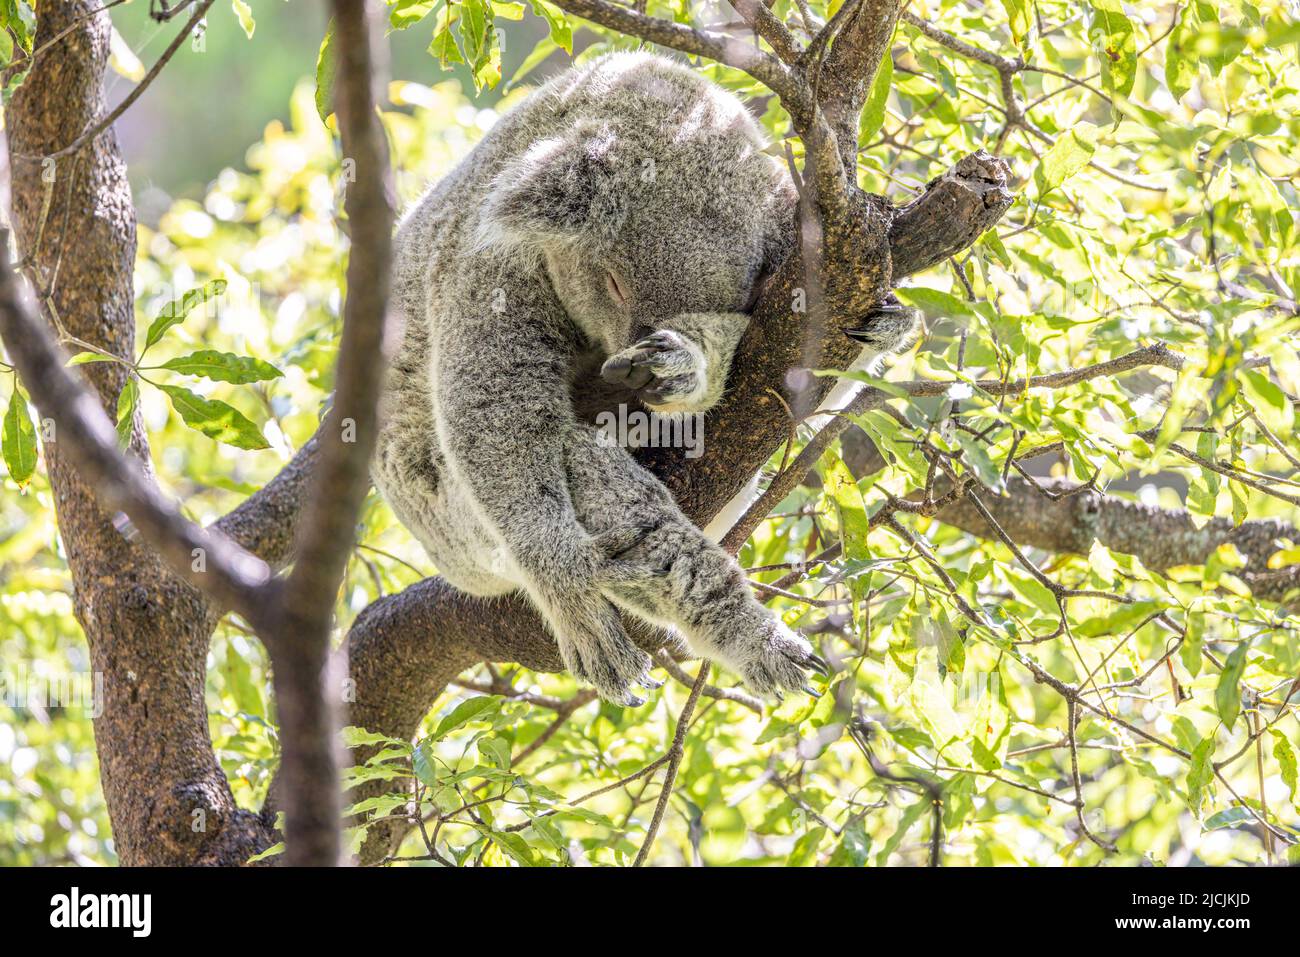 Nahaufnahme eines Koala (Phascolarctos cinereus), der während des Schlafens an einem Ast festhält. Koalas sind einheimische australische Beuteltiere. Stockfoto